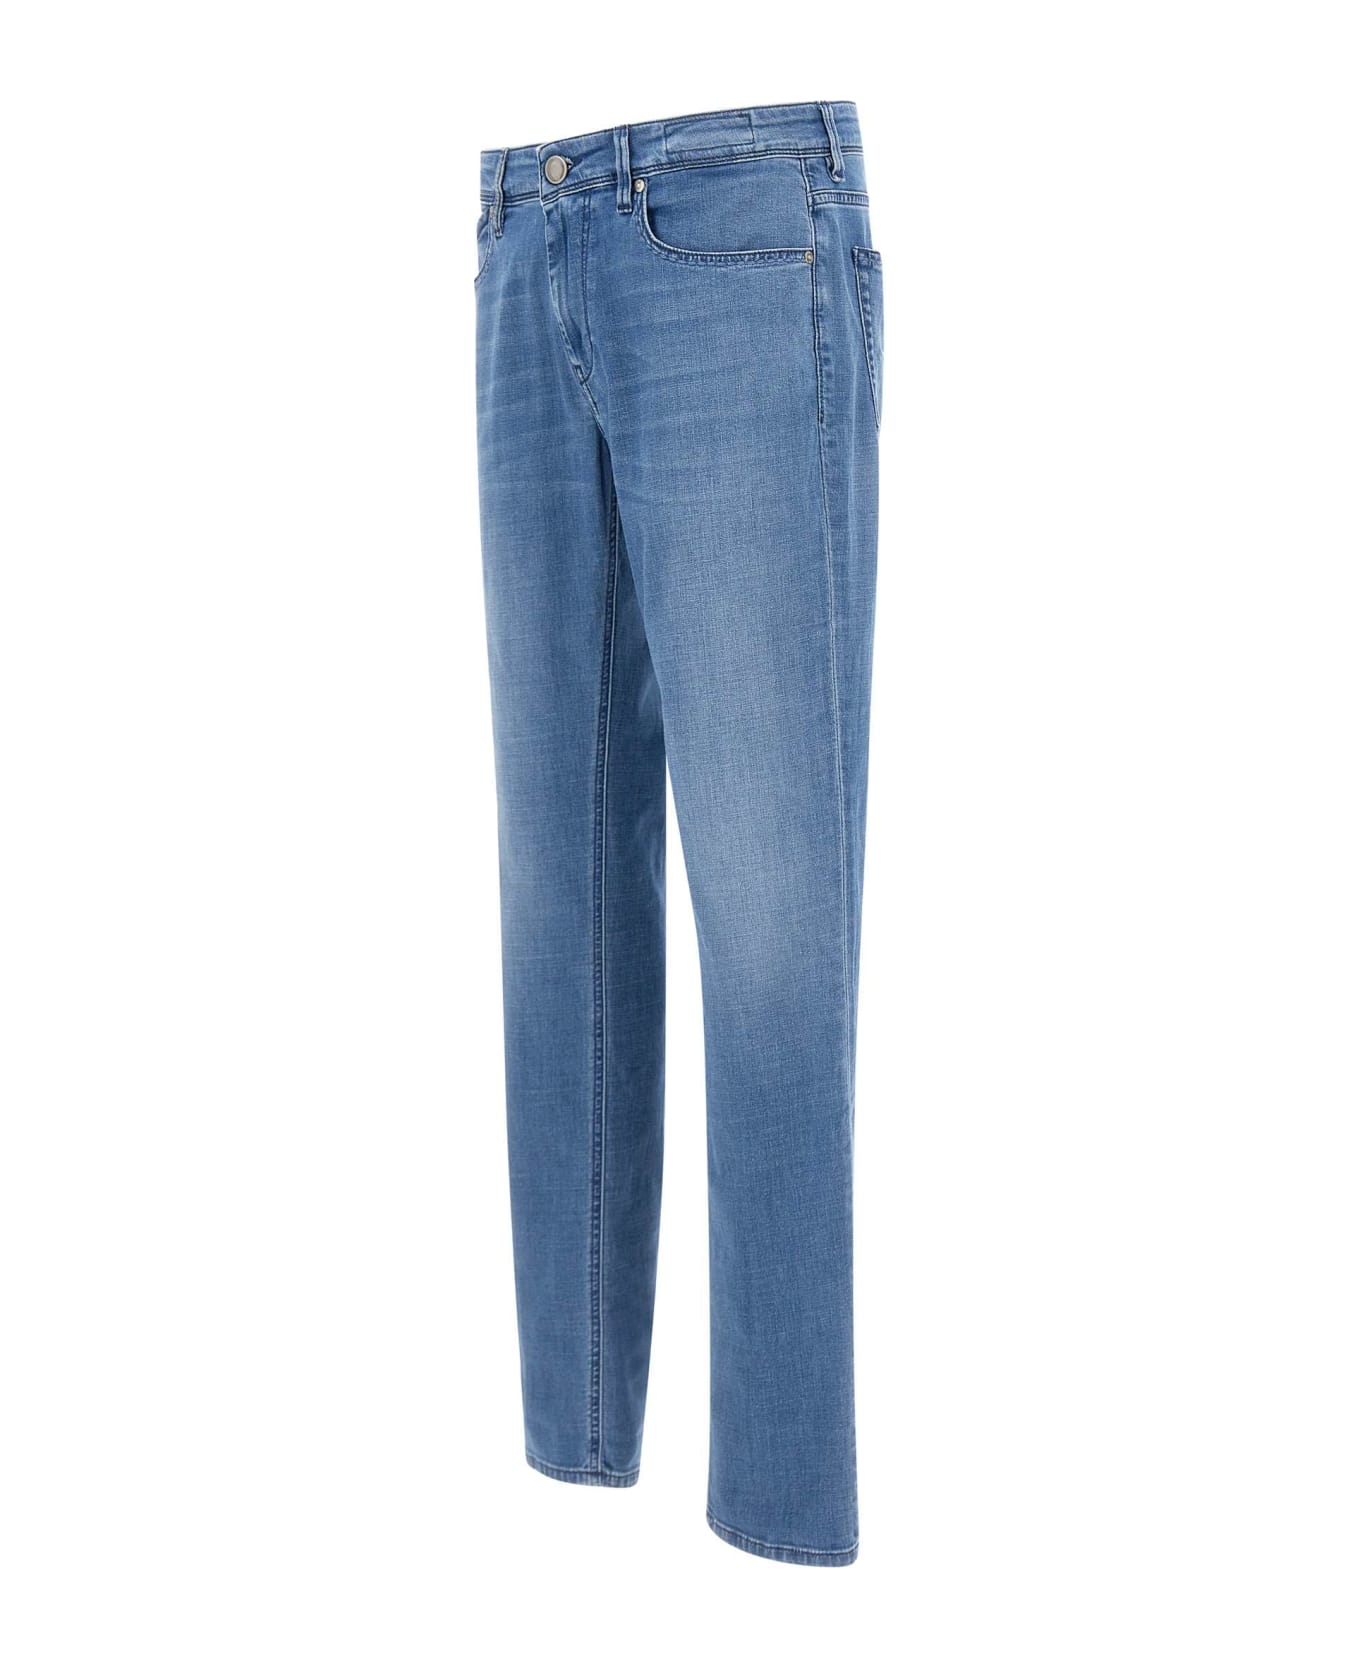 Re-HasH 'rubens Z' Jeans